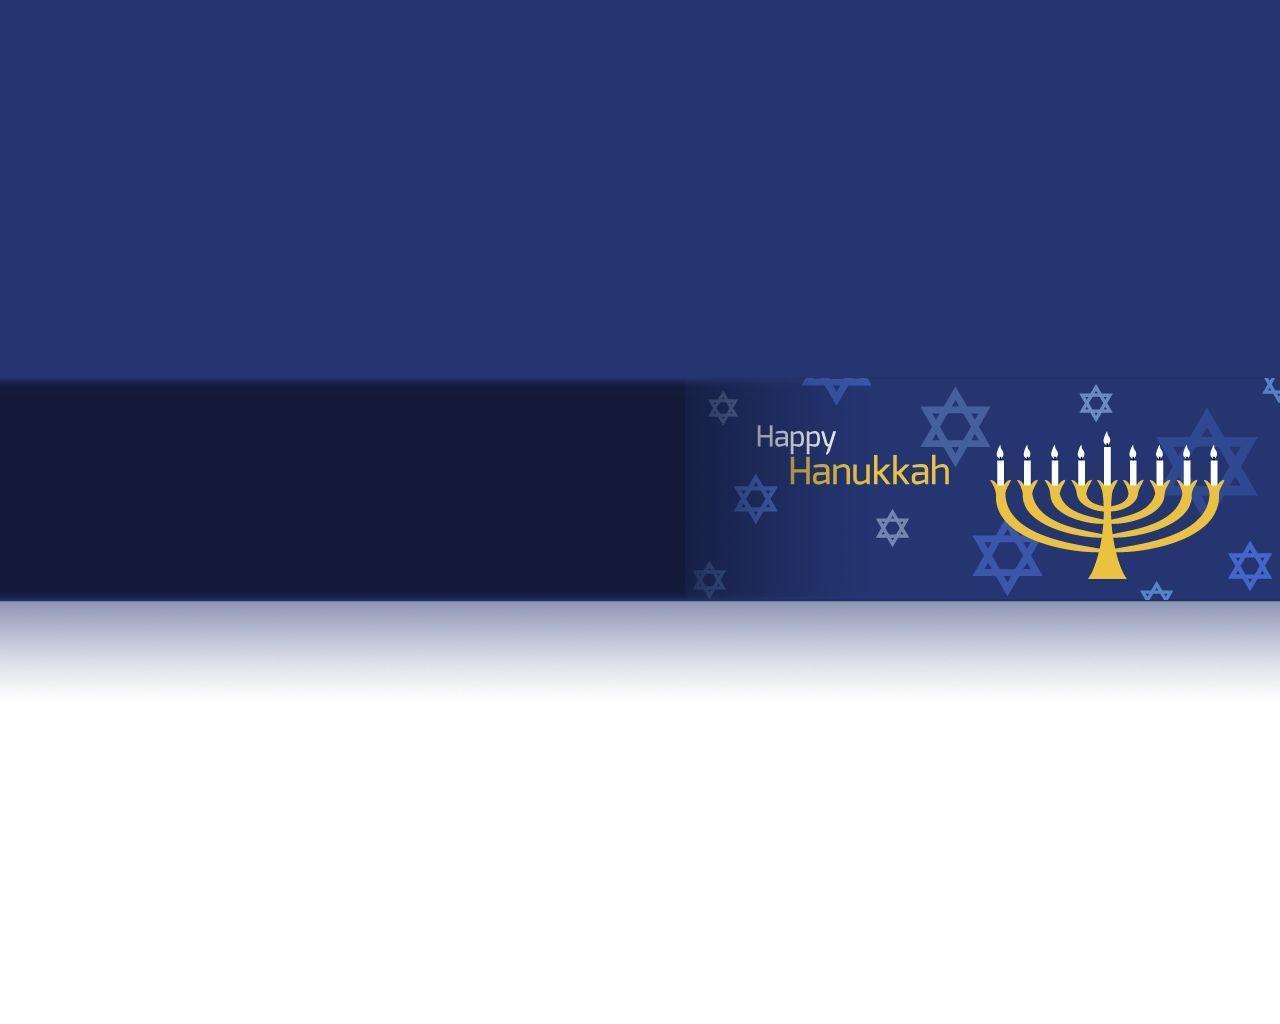 Hanukkah Wallpaper, HQFX Cover